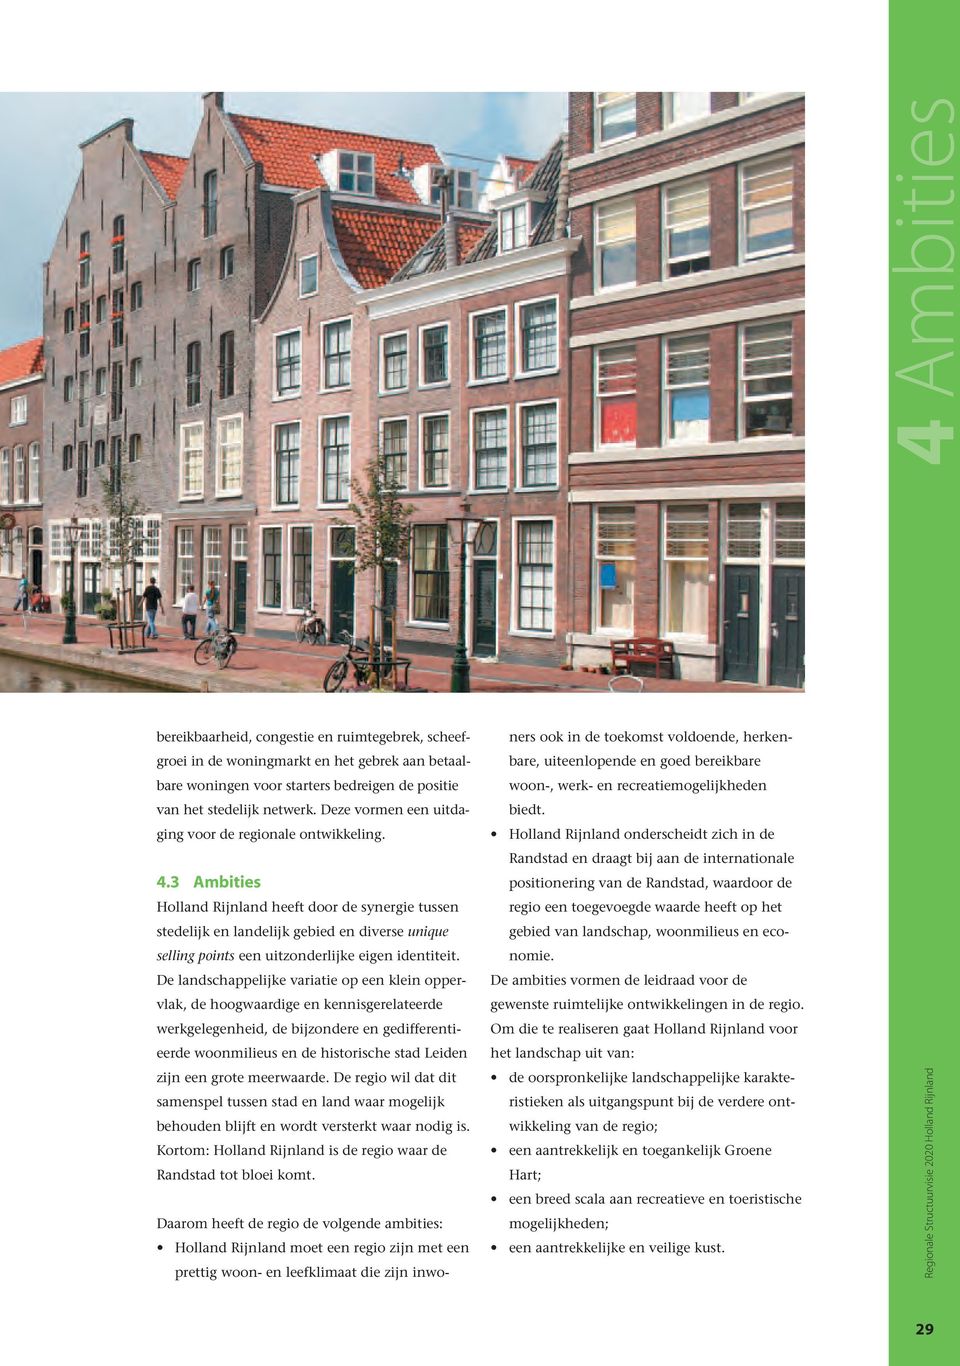 3 Ambities Holland Rijnland heeft door de synergie tussen stedelijk en landelijk gebied en diverse unique selling points een uitzonderlijke eigen identiteit.